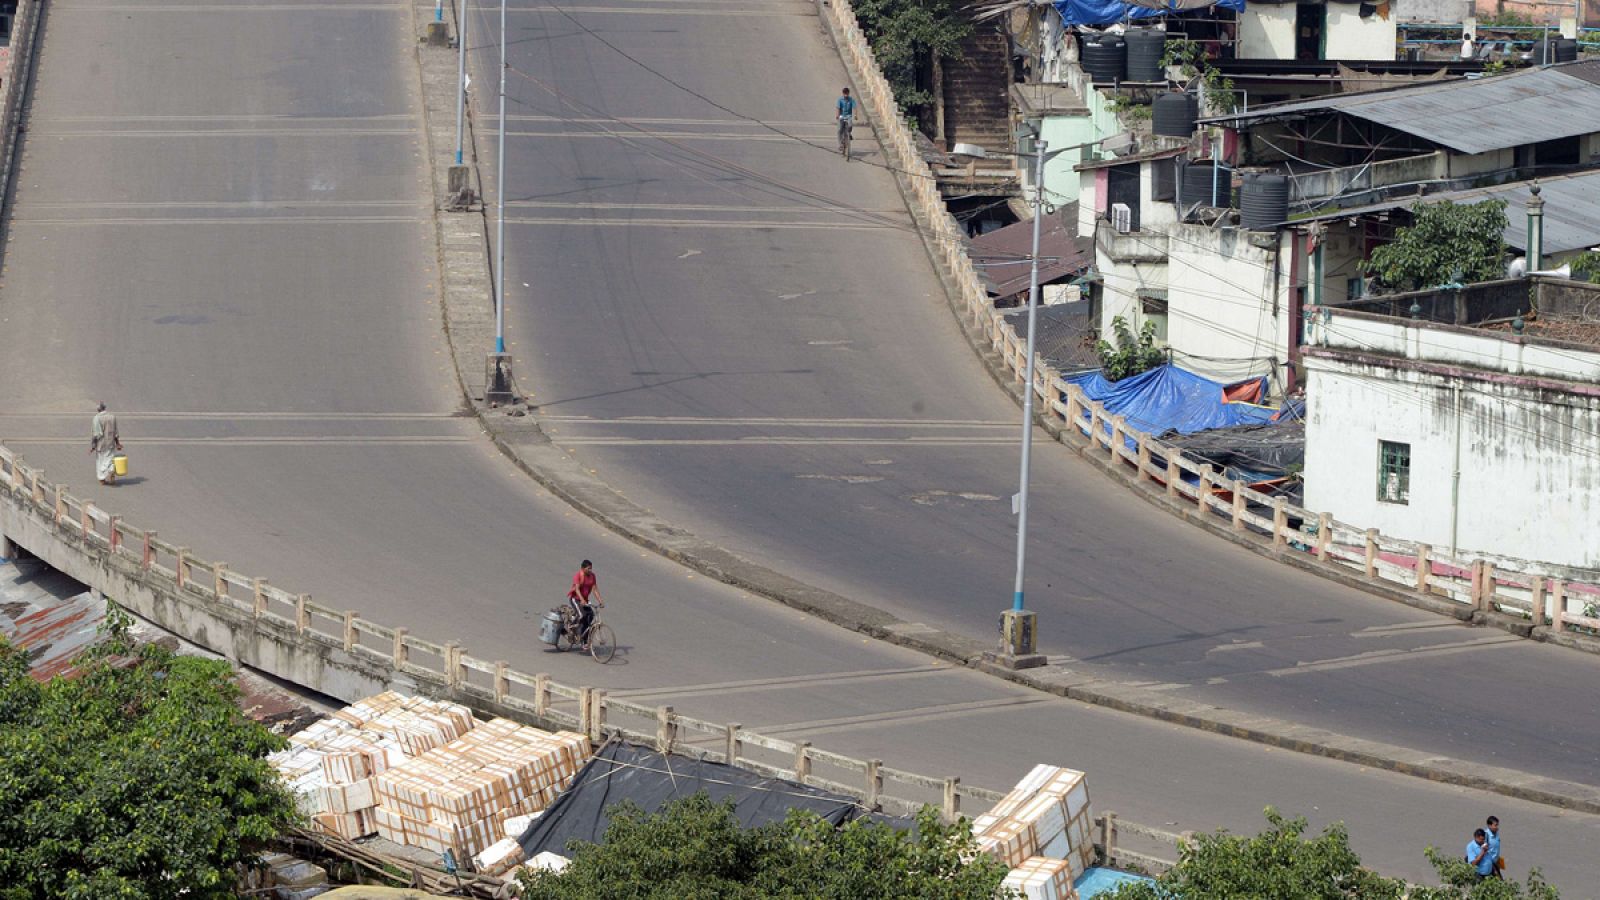 Carretera semivacía en la ciudad de Calcuta